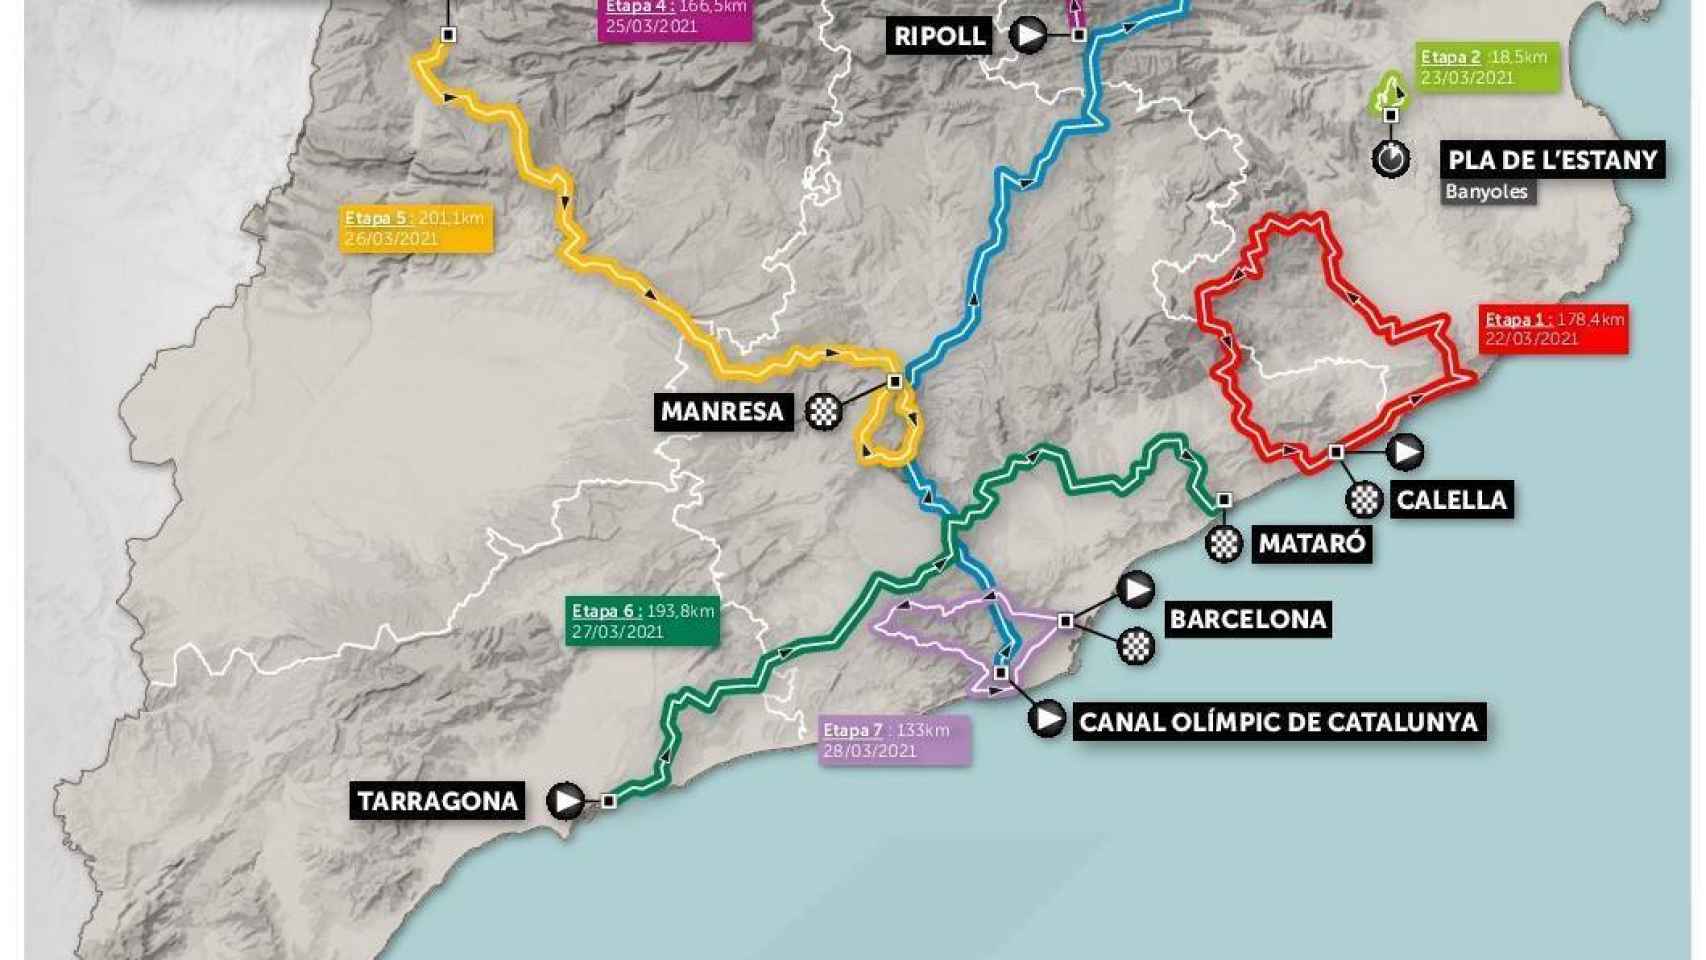 El recorrido de la Volta a Cataluña 2021